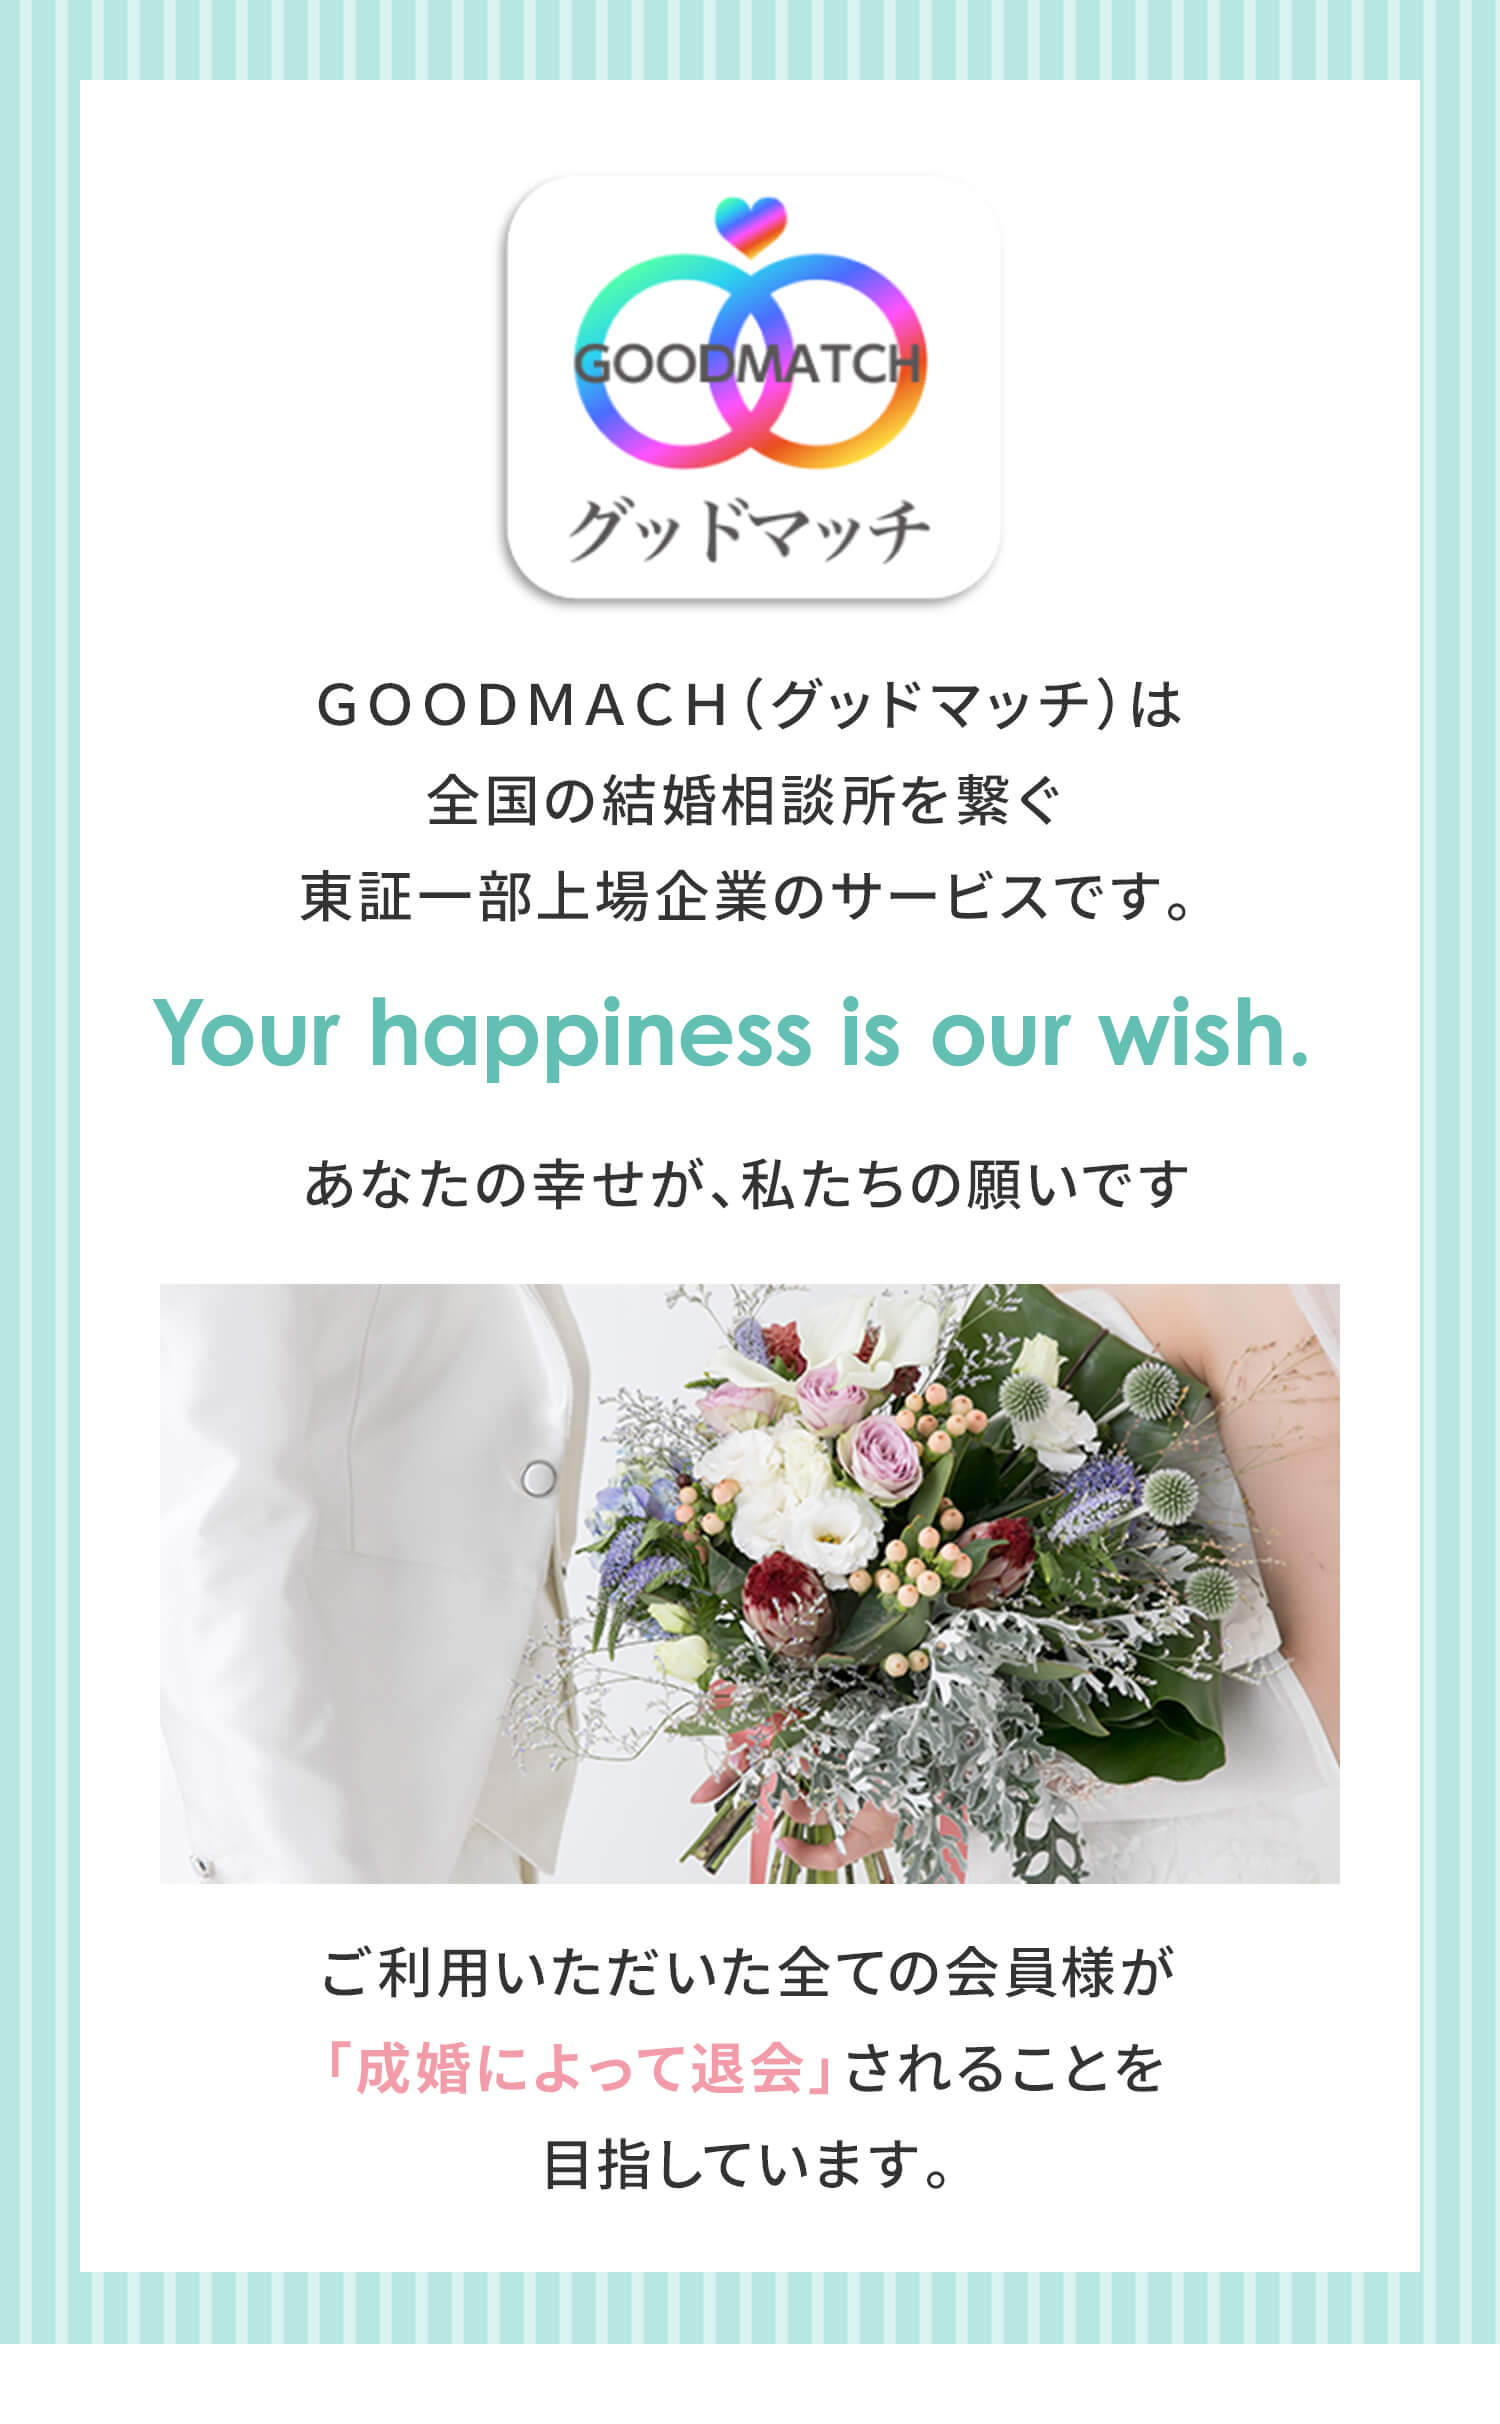 ＧＯＯＤＭＡＣＨ（グッドマッチ）は全国の結婚相談所を繋ぐ東証一部上場企業のサービスです。あなたの幸せが、私たちの願いです ご利用いただいた全ての会員様が「成婚によって退会」されることを目指しています。